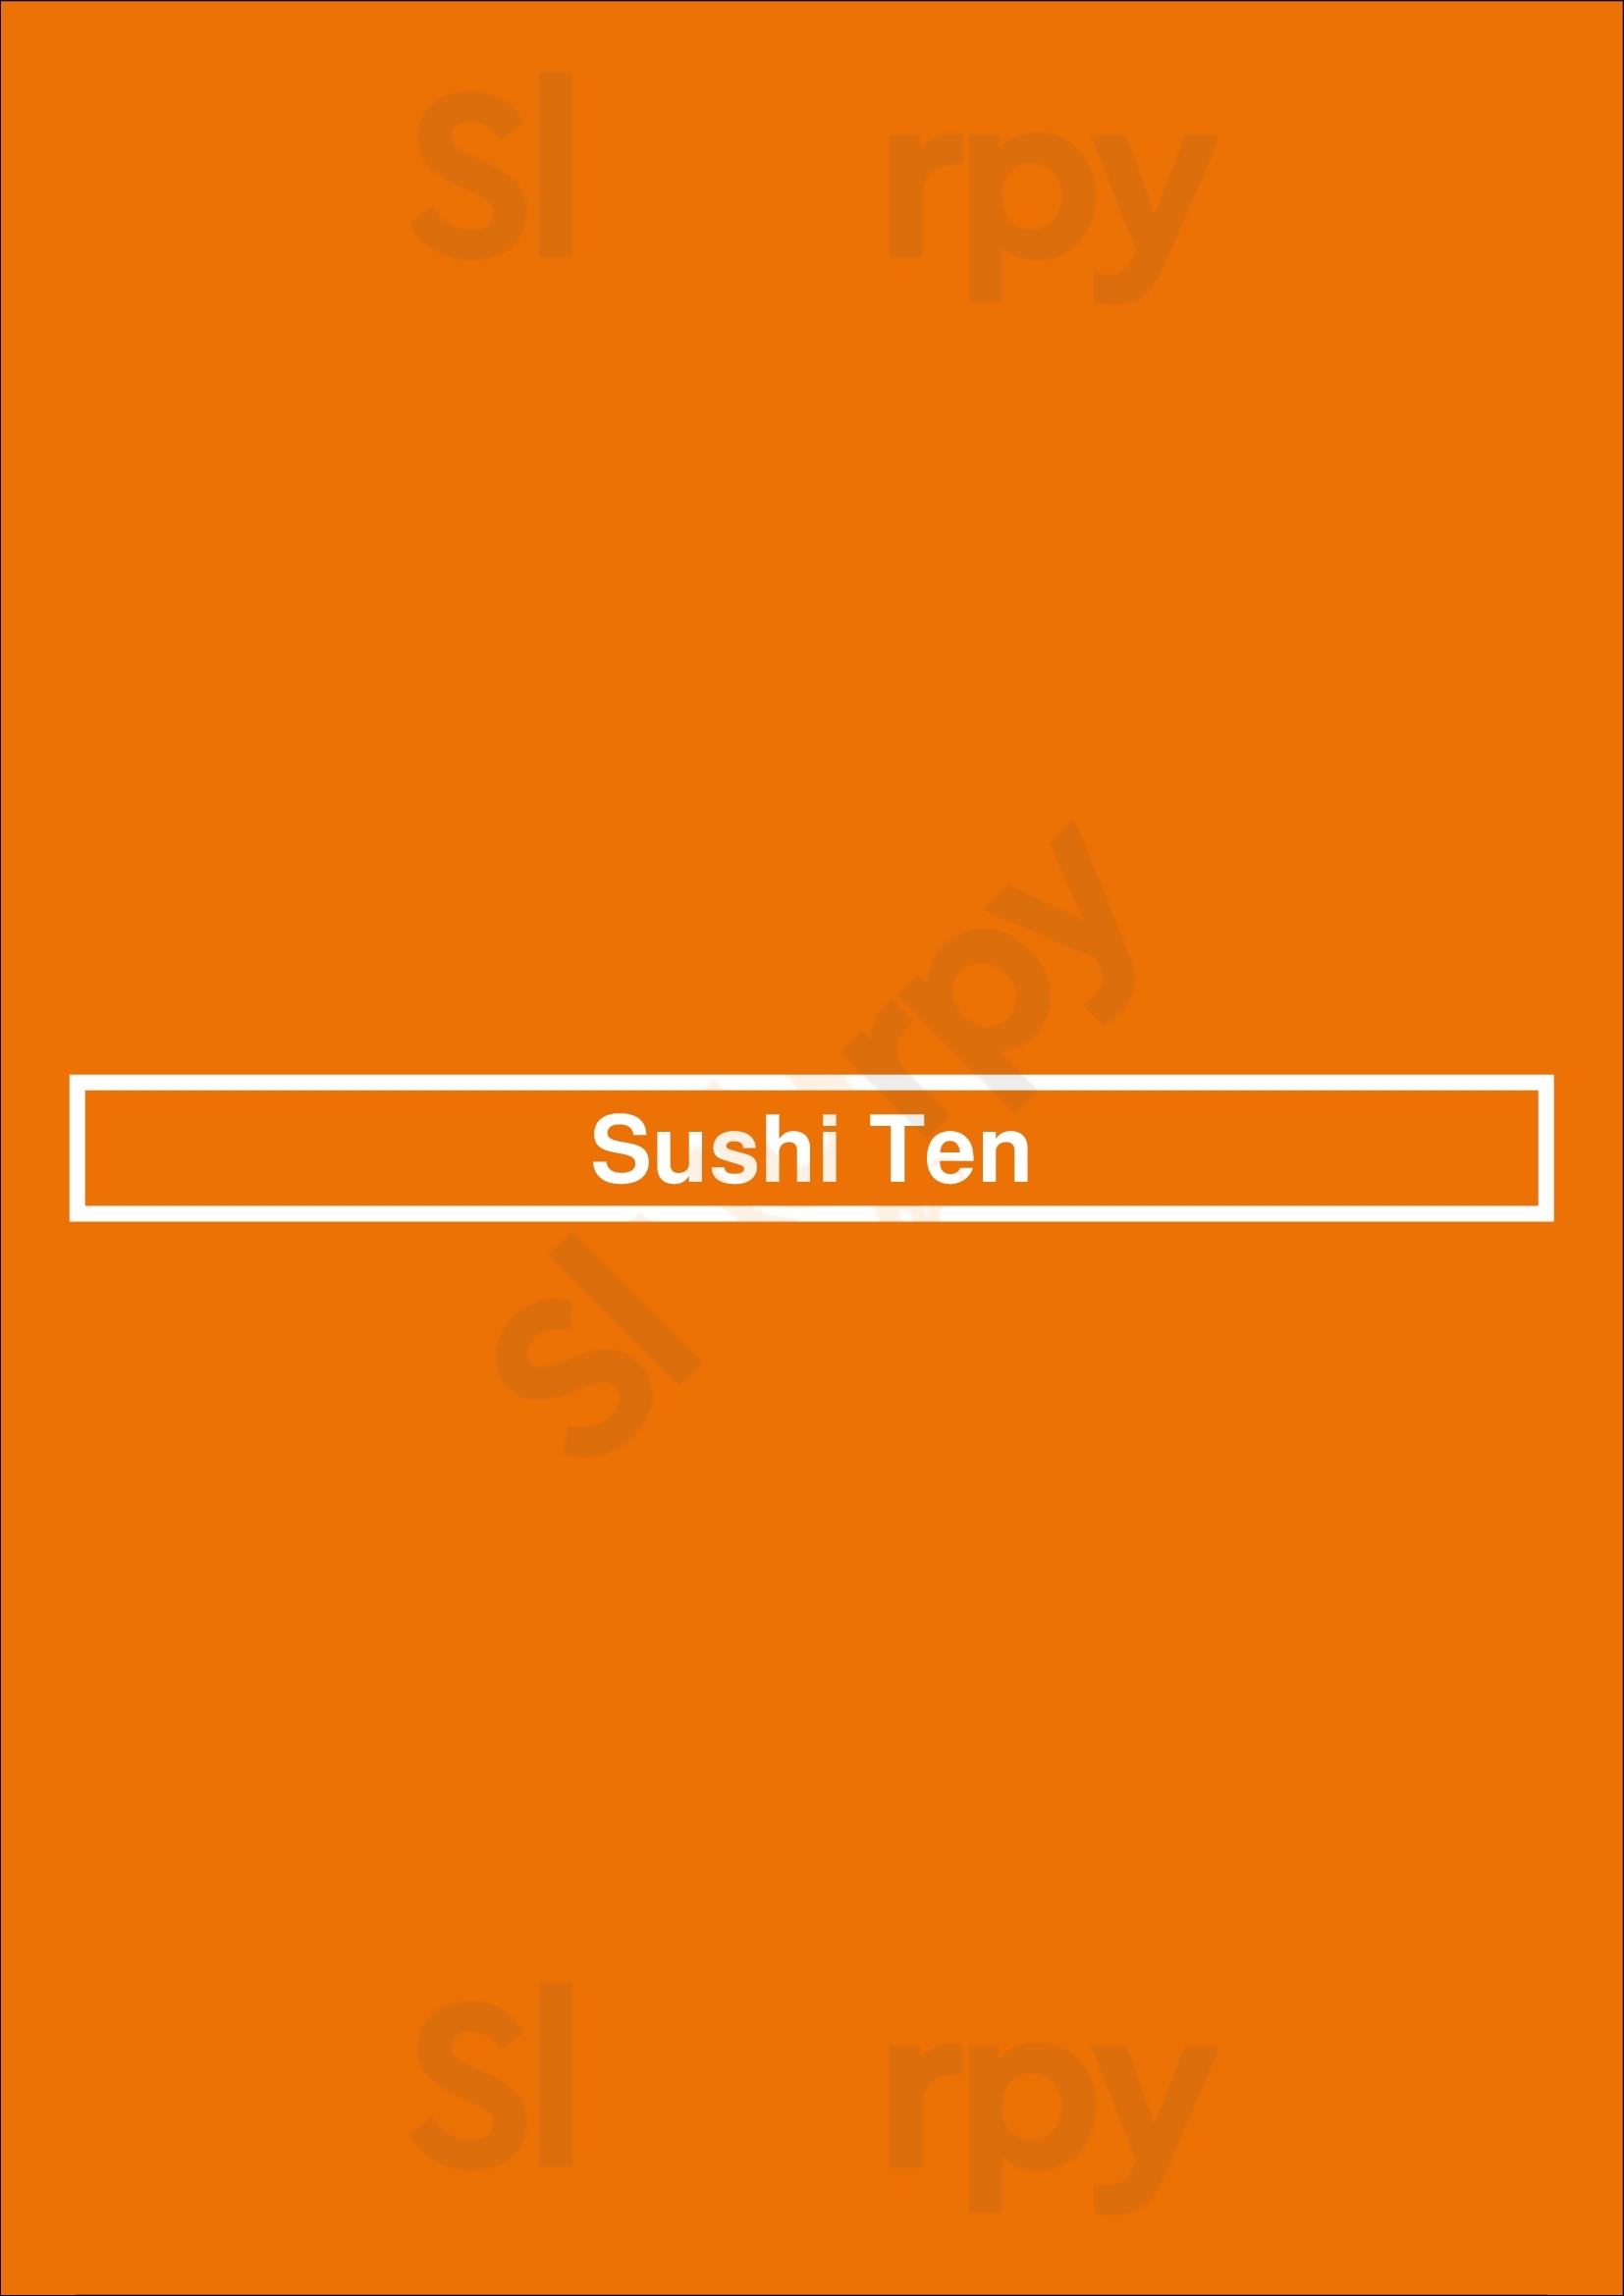 Sushi Ten Calgary Menu - 1